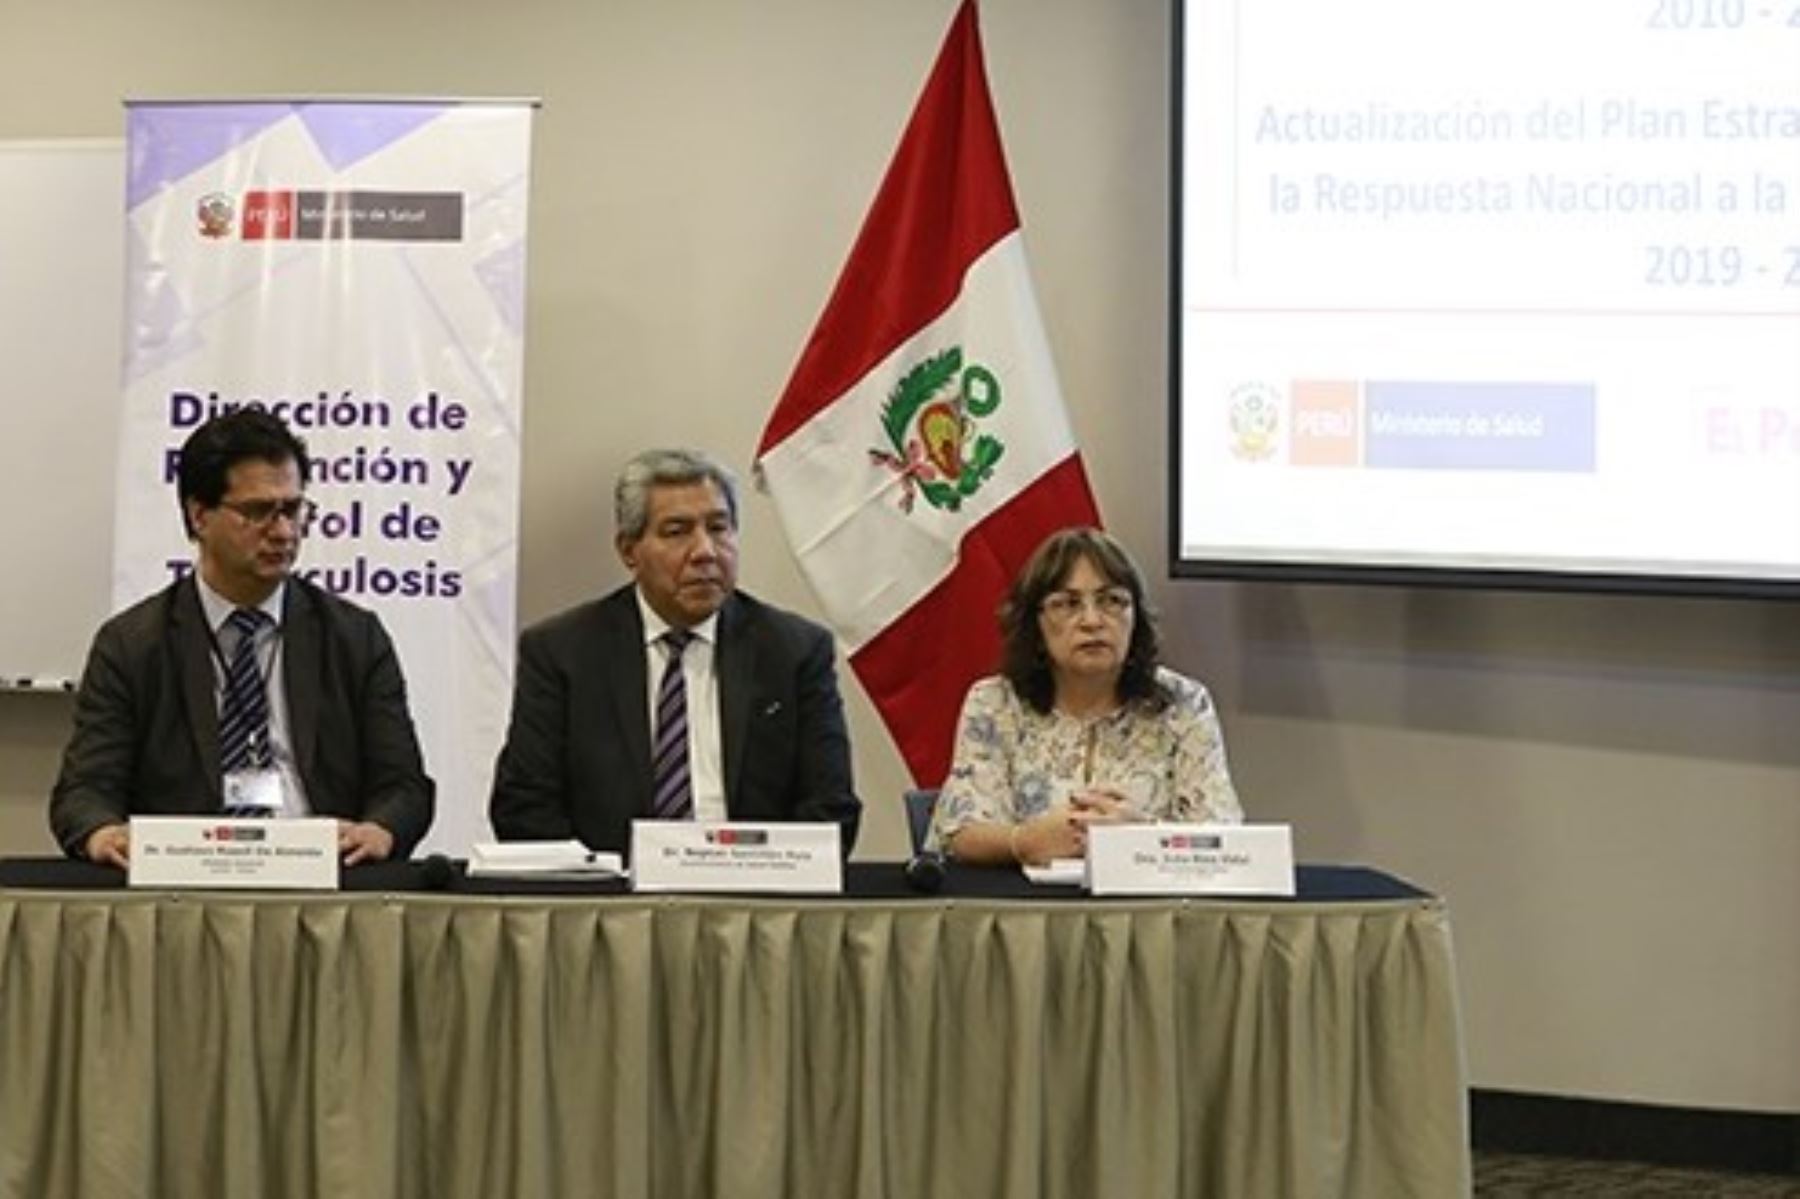 Neptalí Santillán, viceministro de Salud Pública, se reunió con funcionarios de salud de las regiones para evaluar el plan estratégico 2010- 2019 de lucha contra la tuberculosis en el Perú.